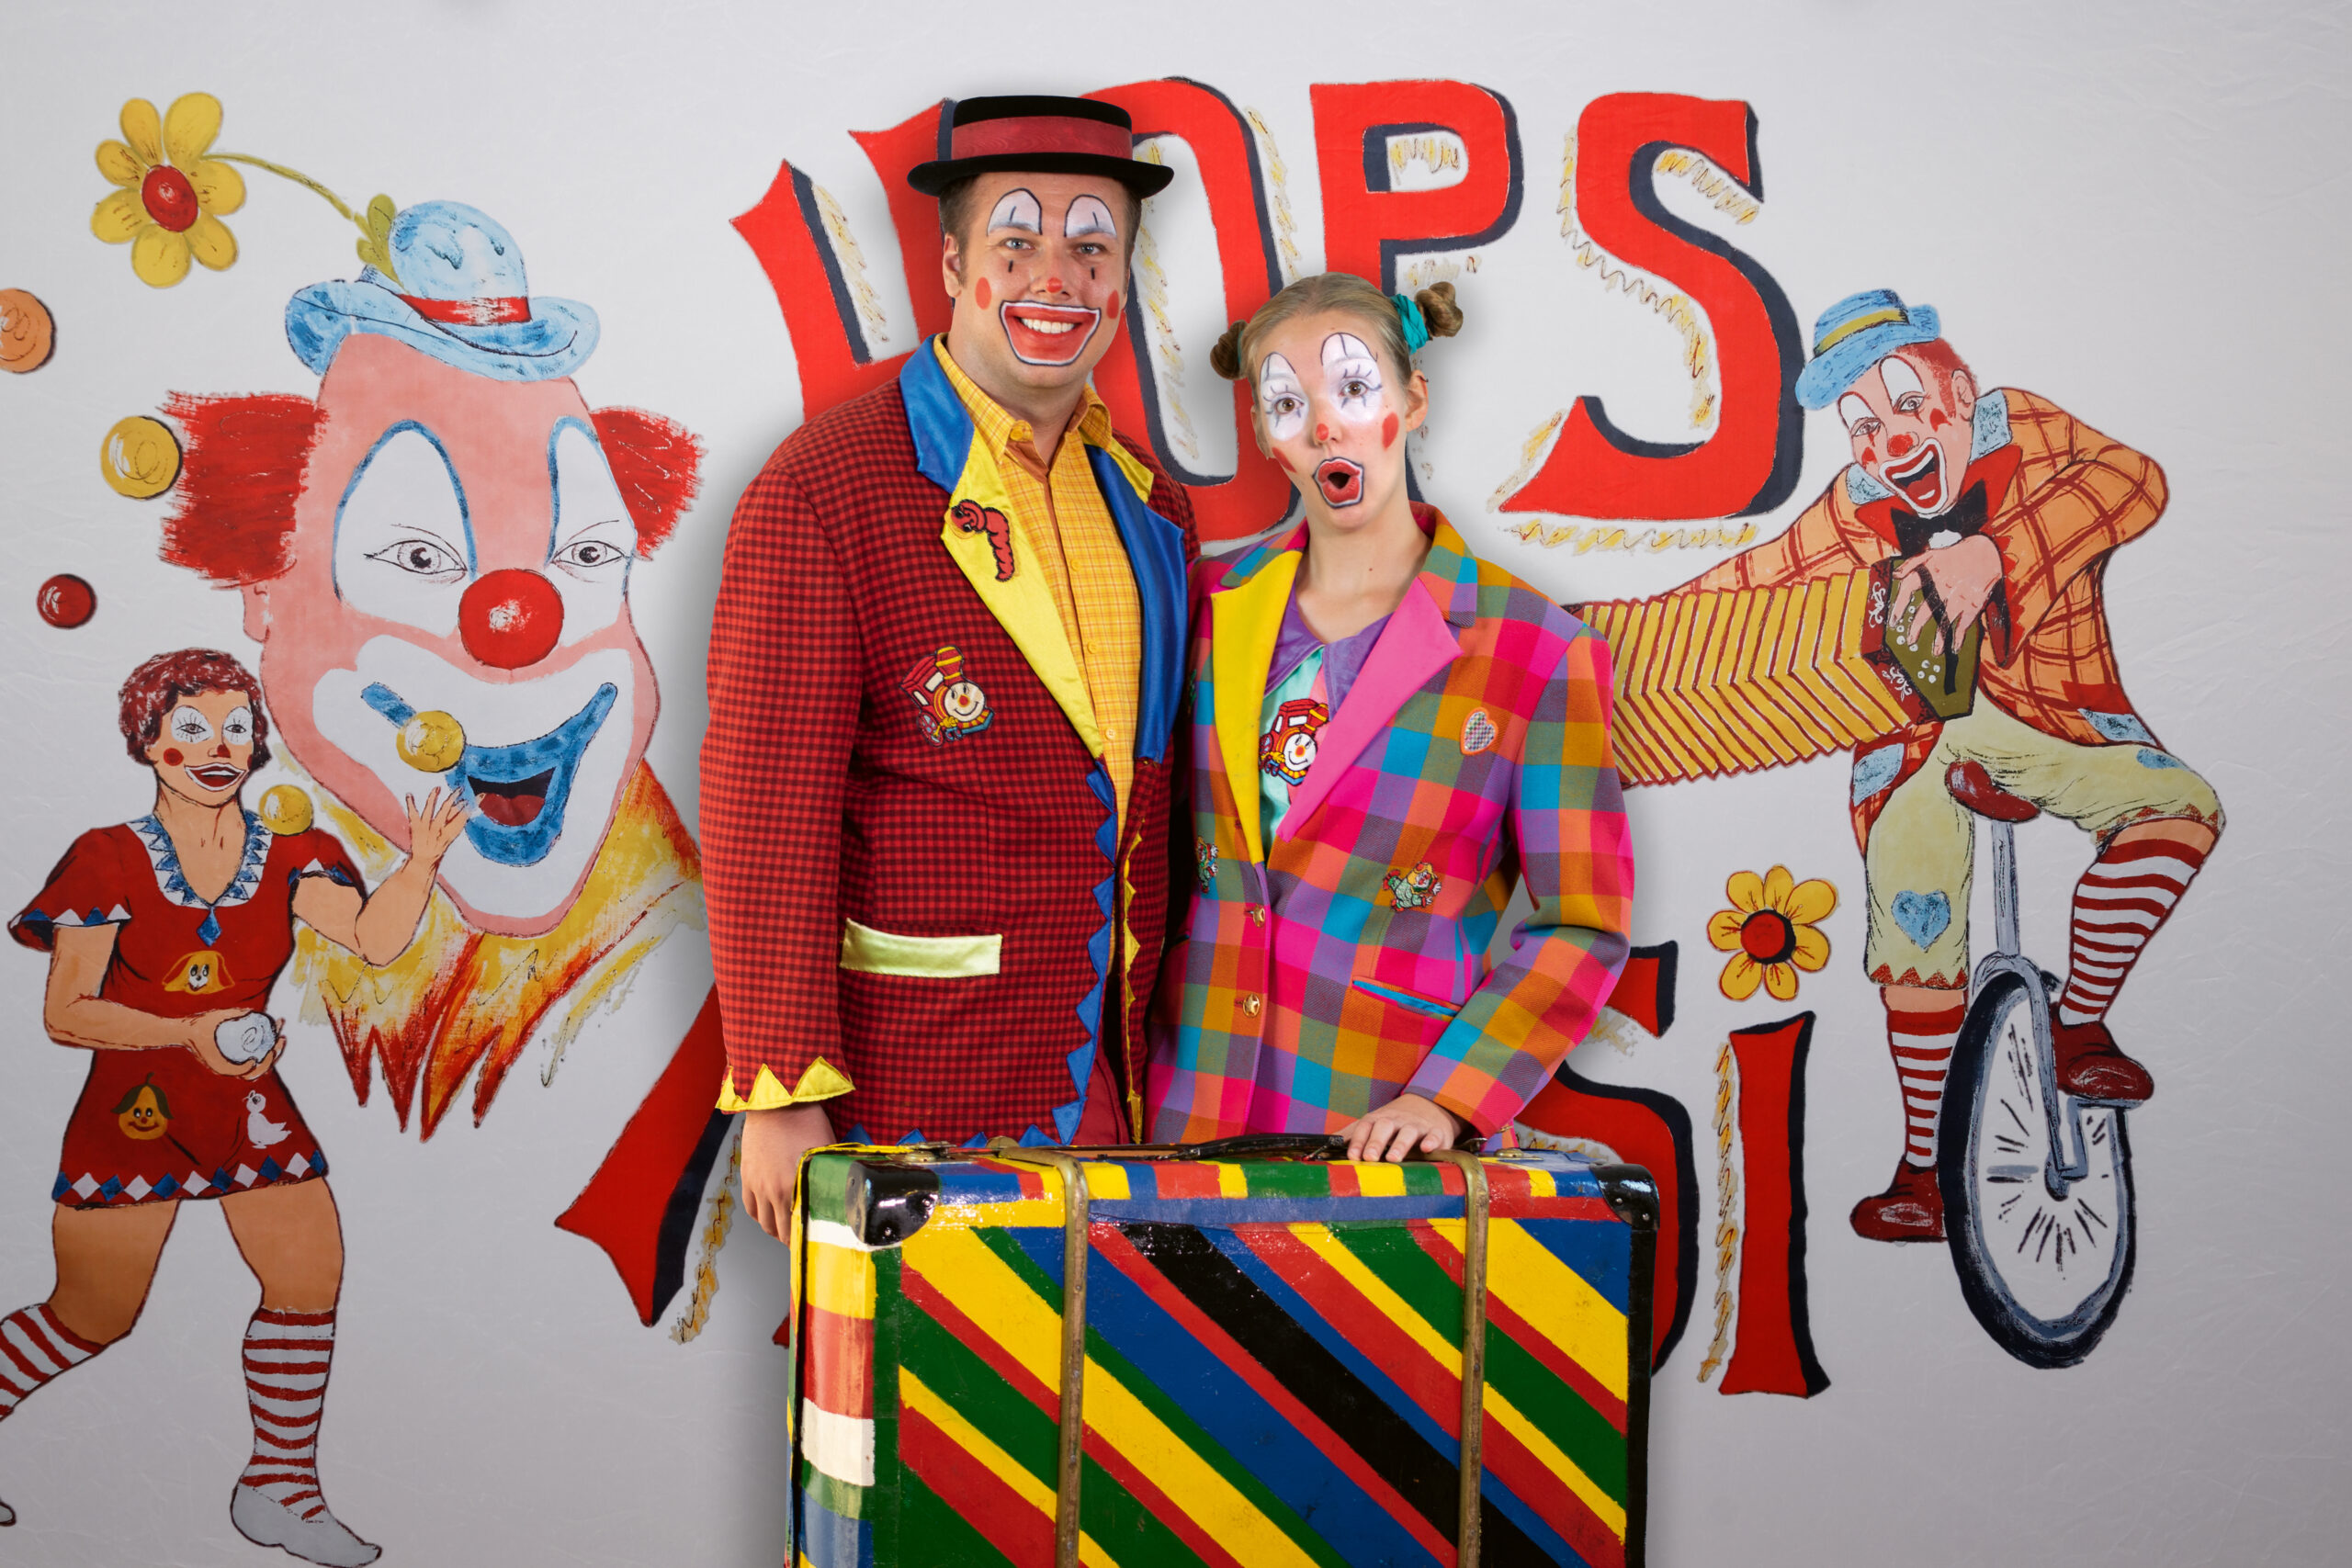 Clown Hops & Hopsi Kinderprogramm: Jubiläumsshow